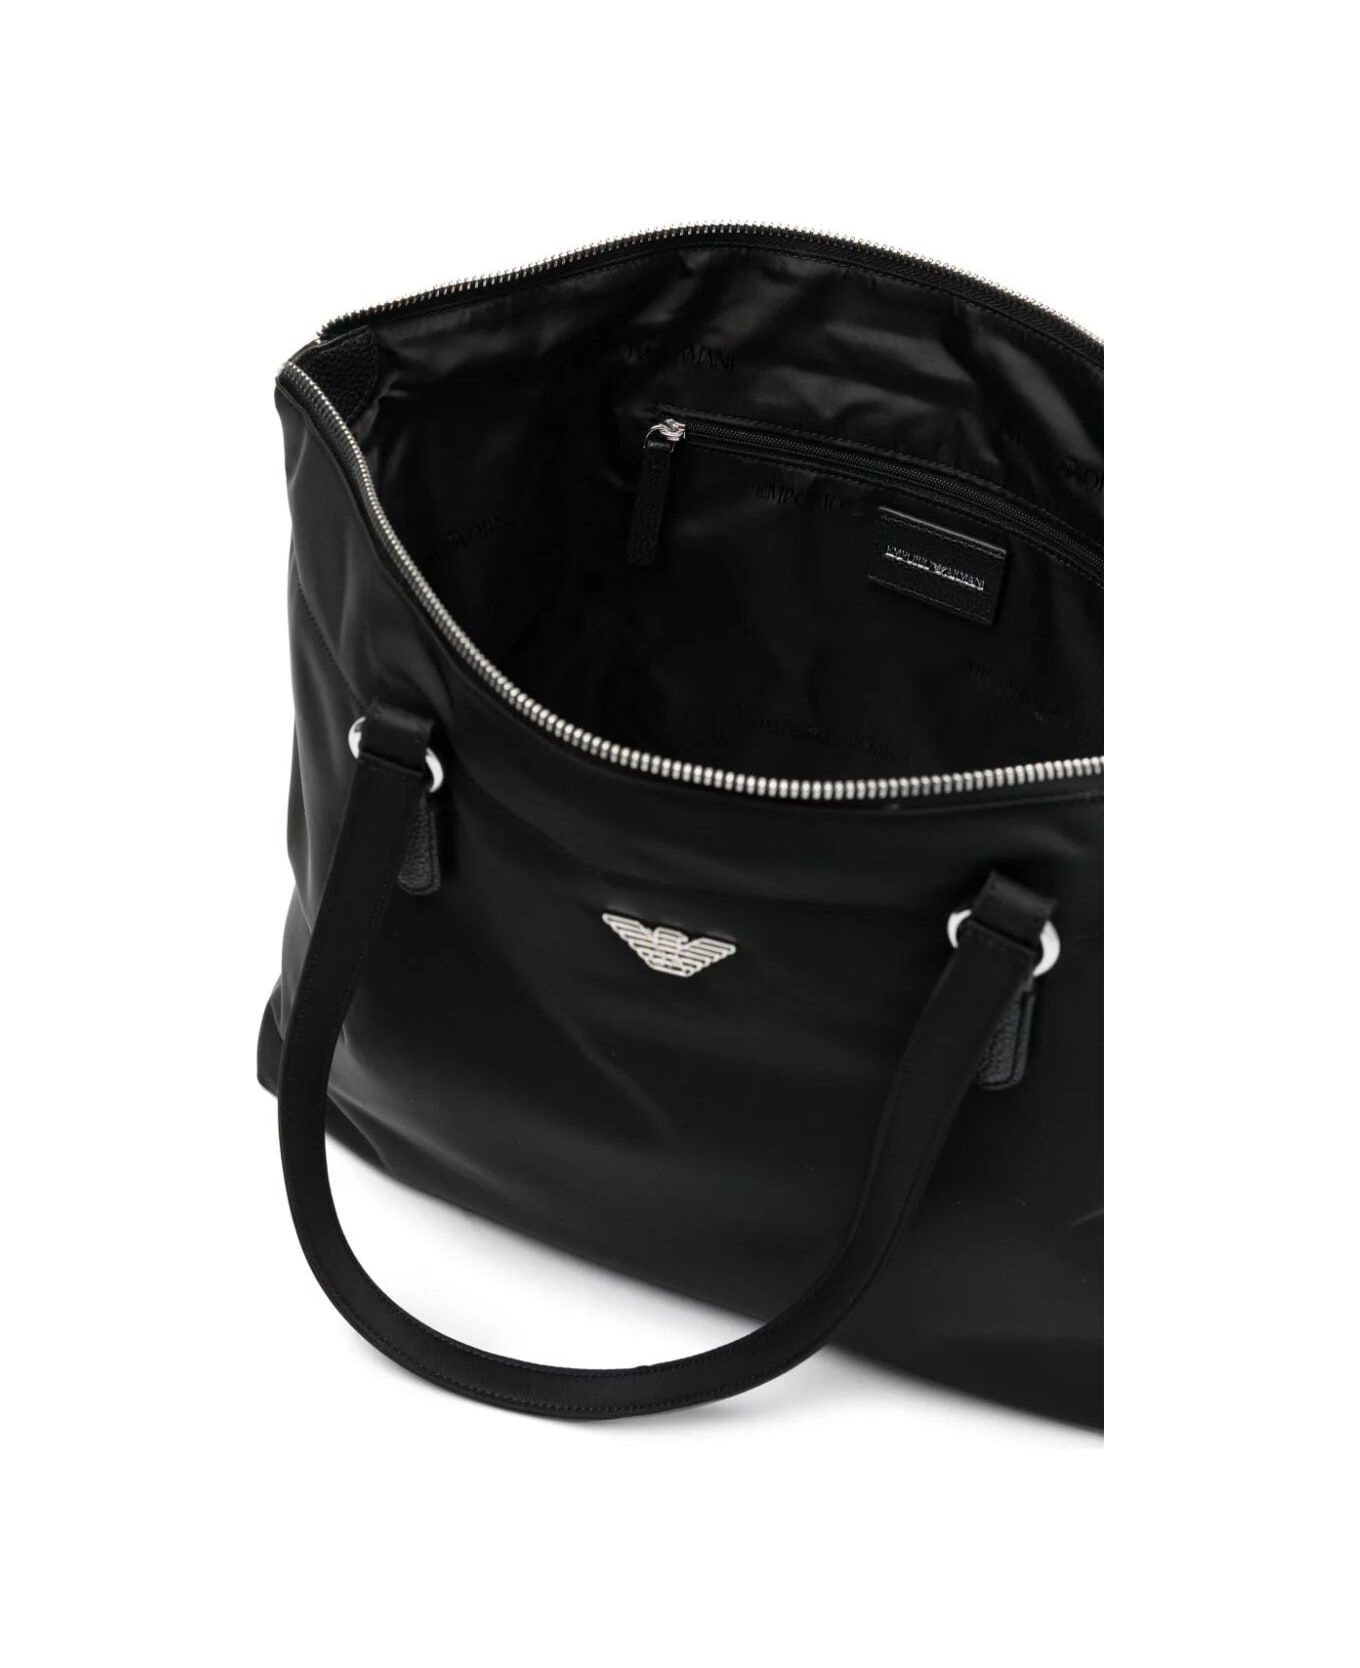 Emporio Armani Shopping Bag - Black トートバッグ